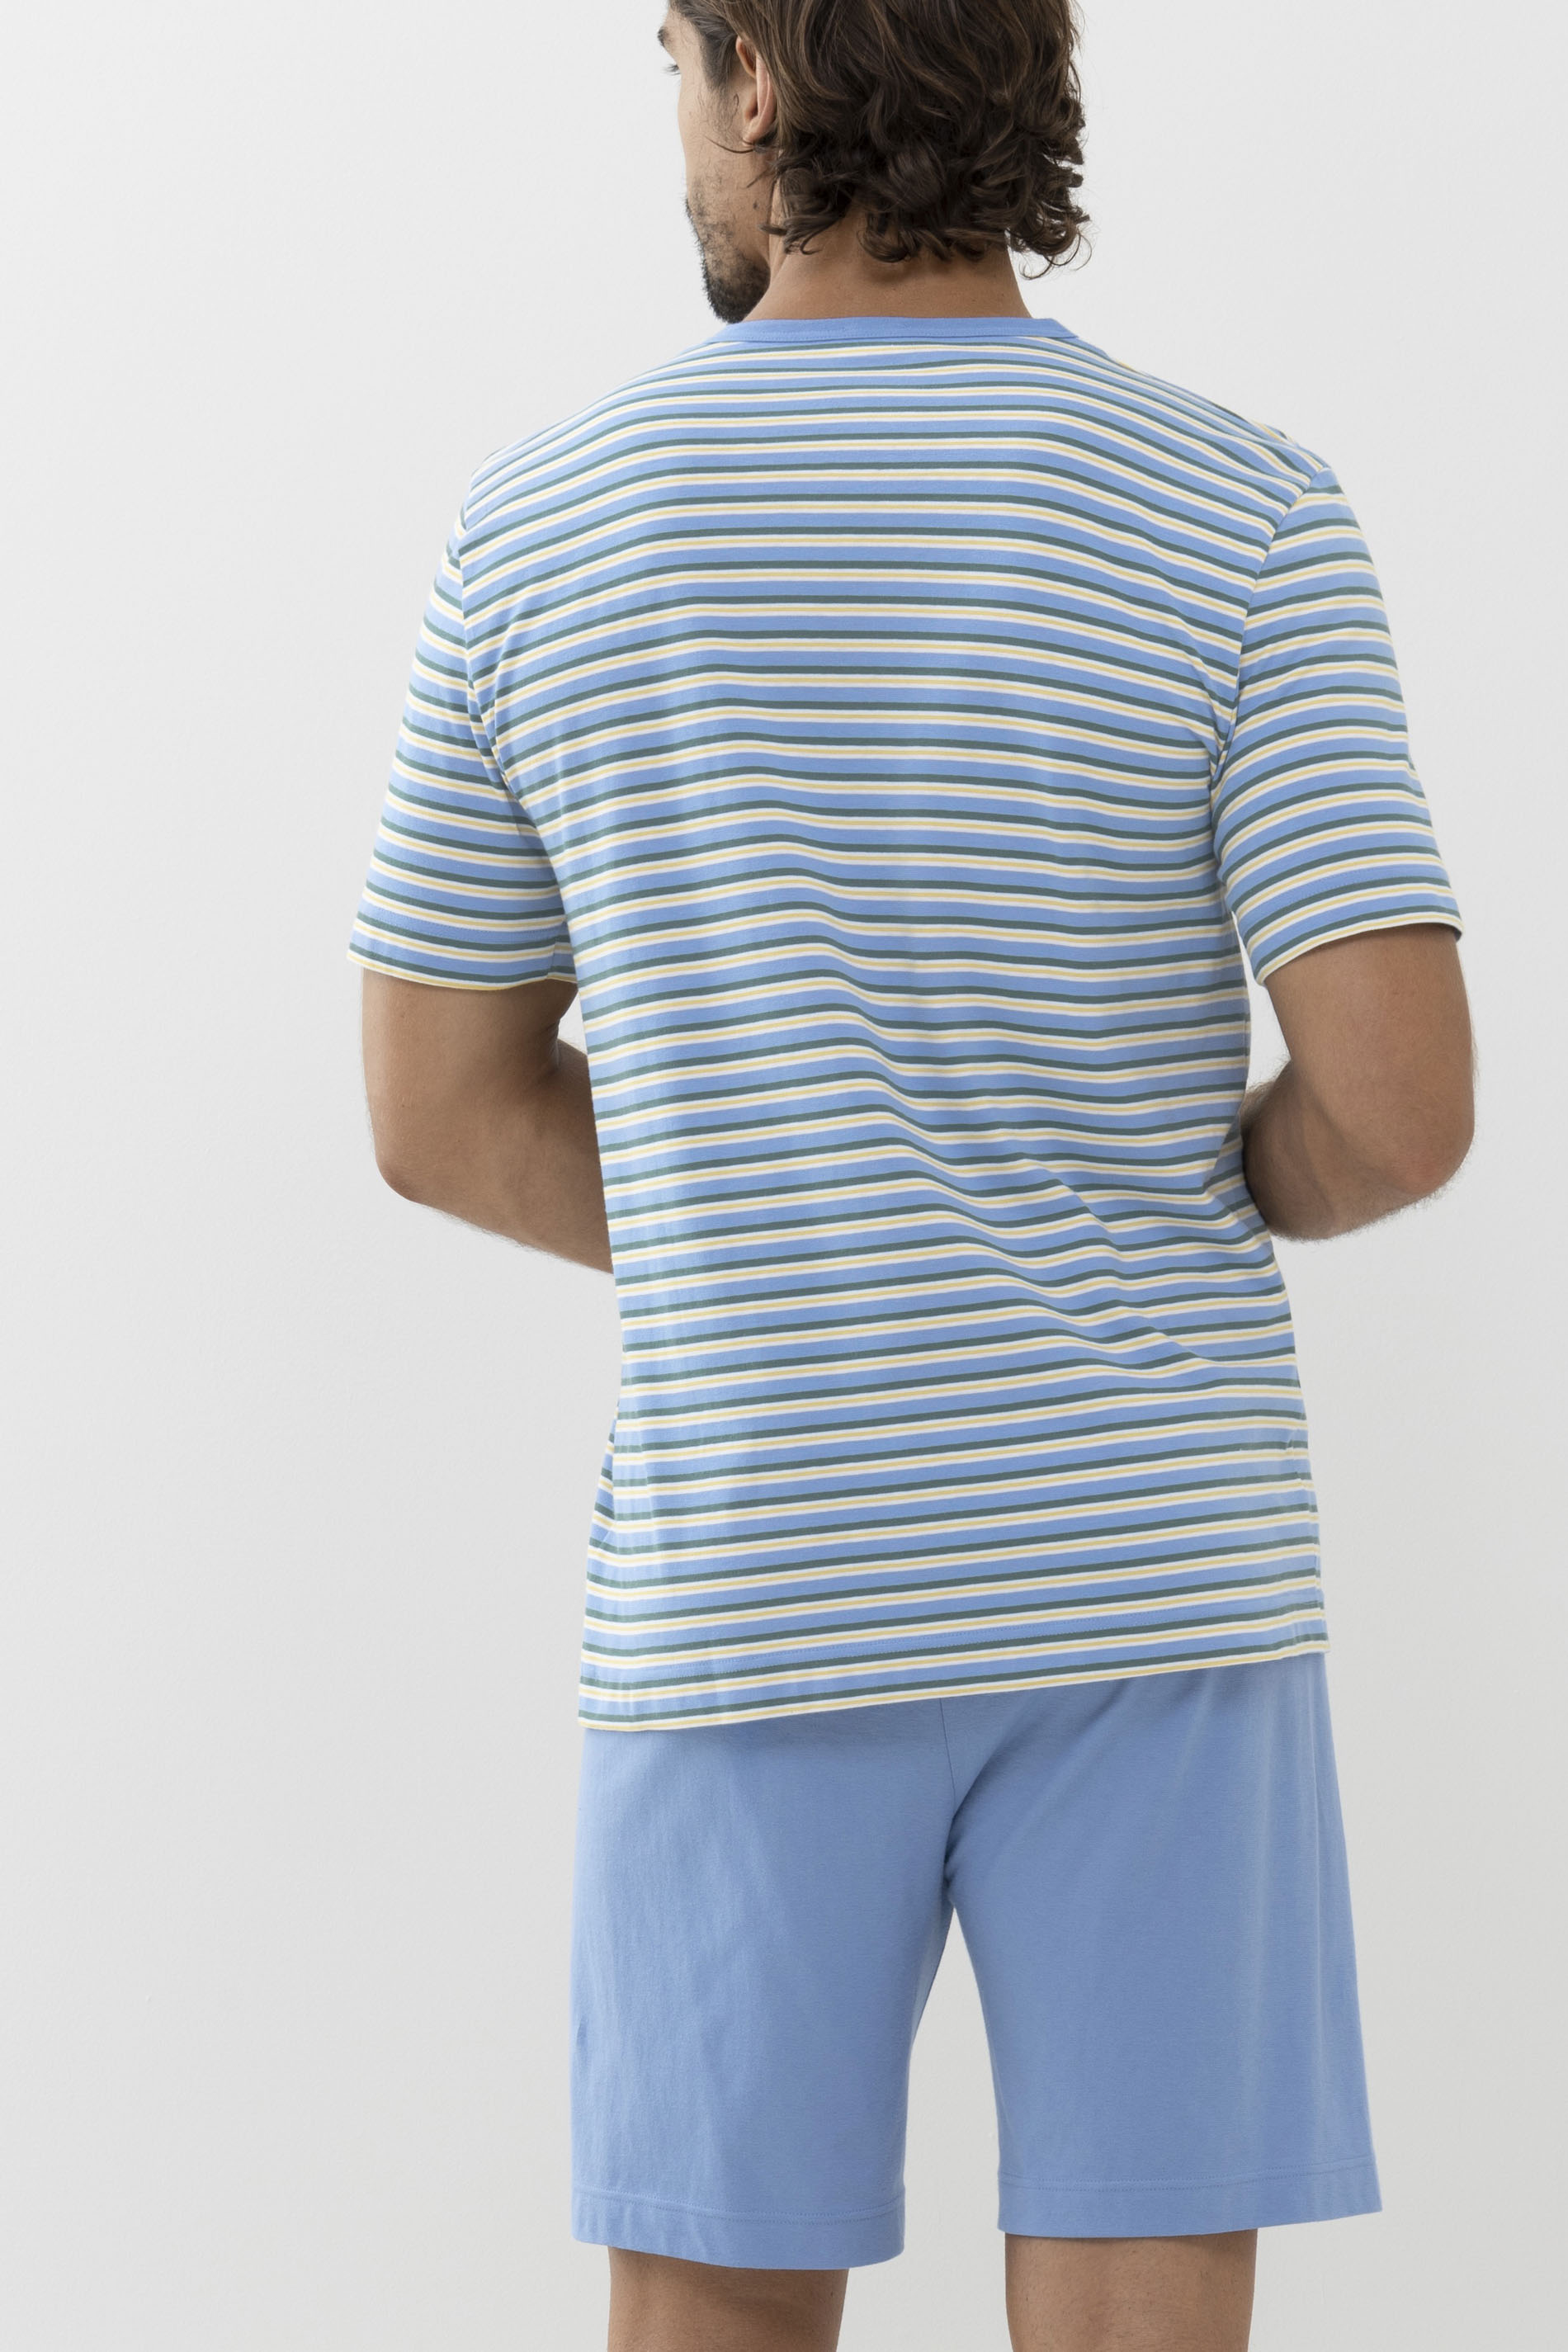 Schlafanzug Serie Cross Stripe Rückansicht | mey®